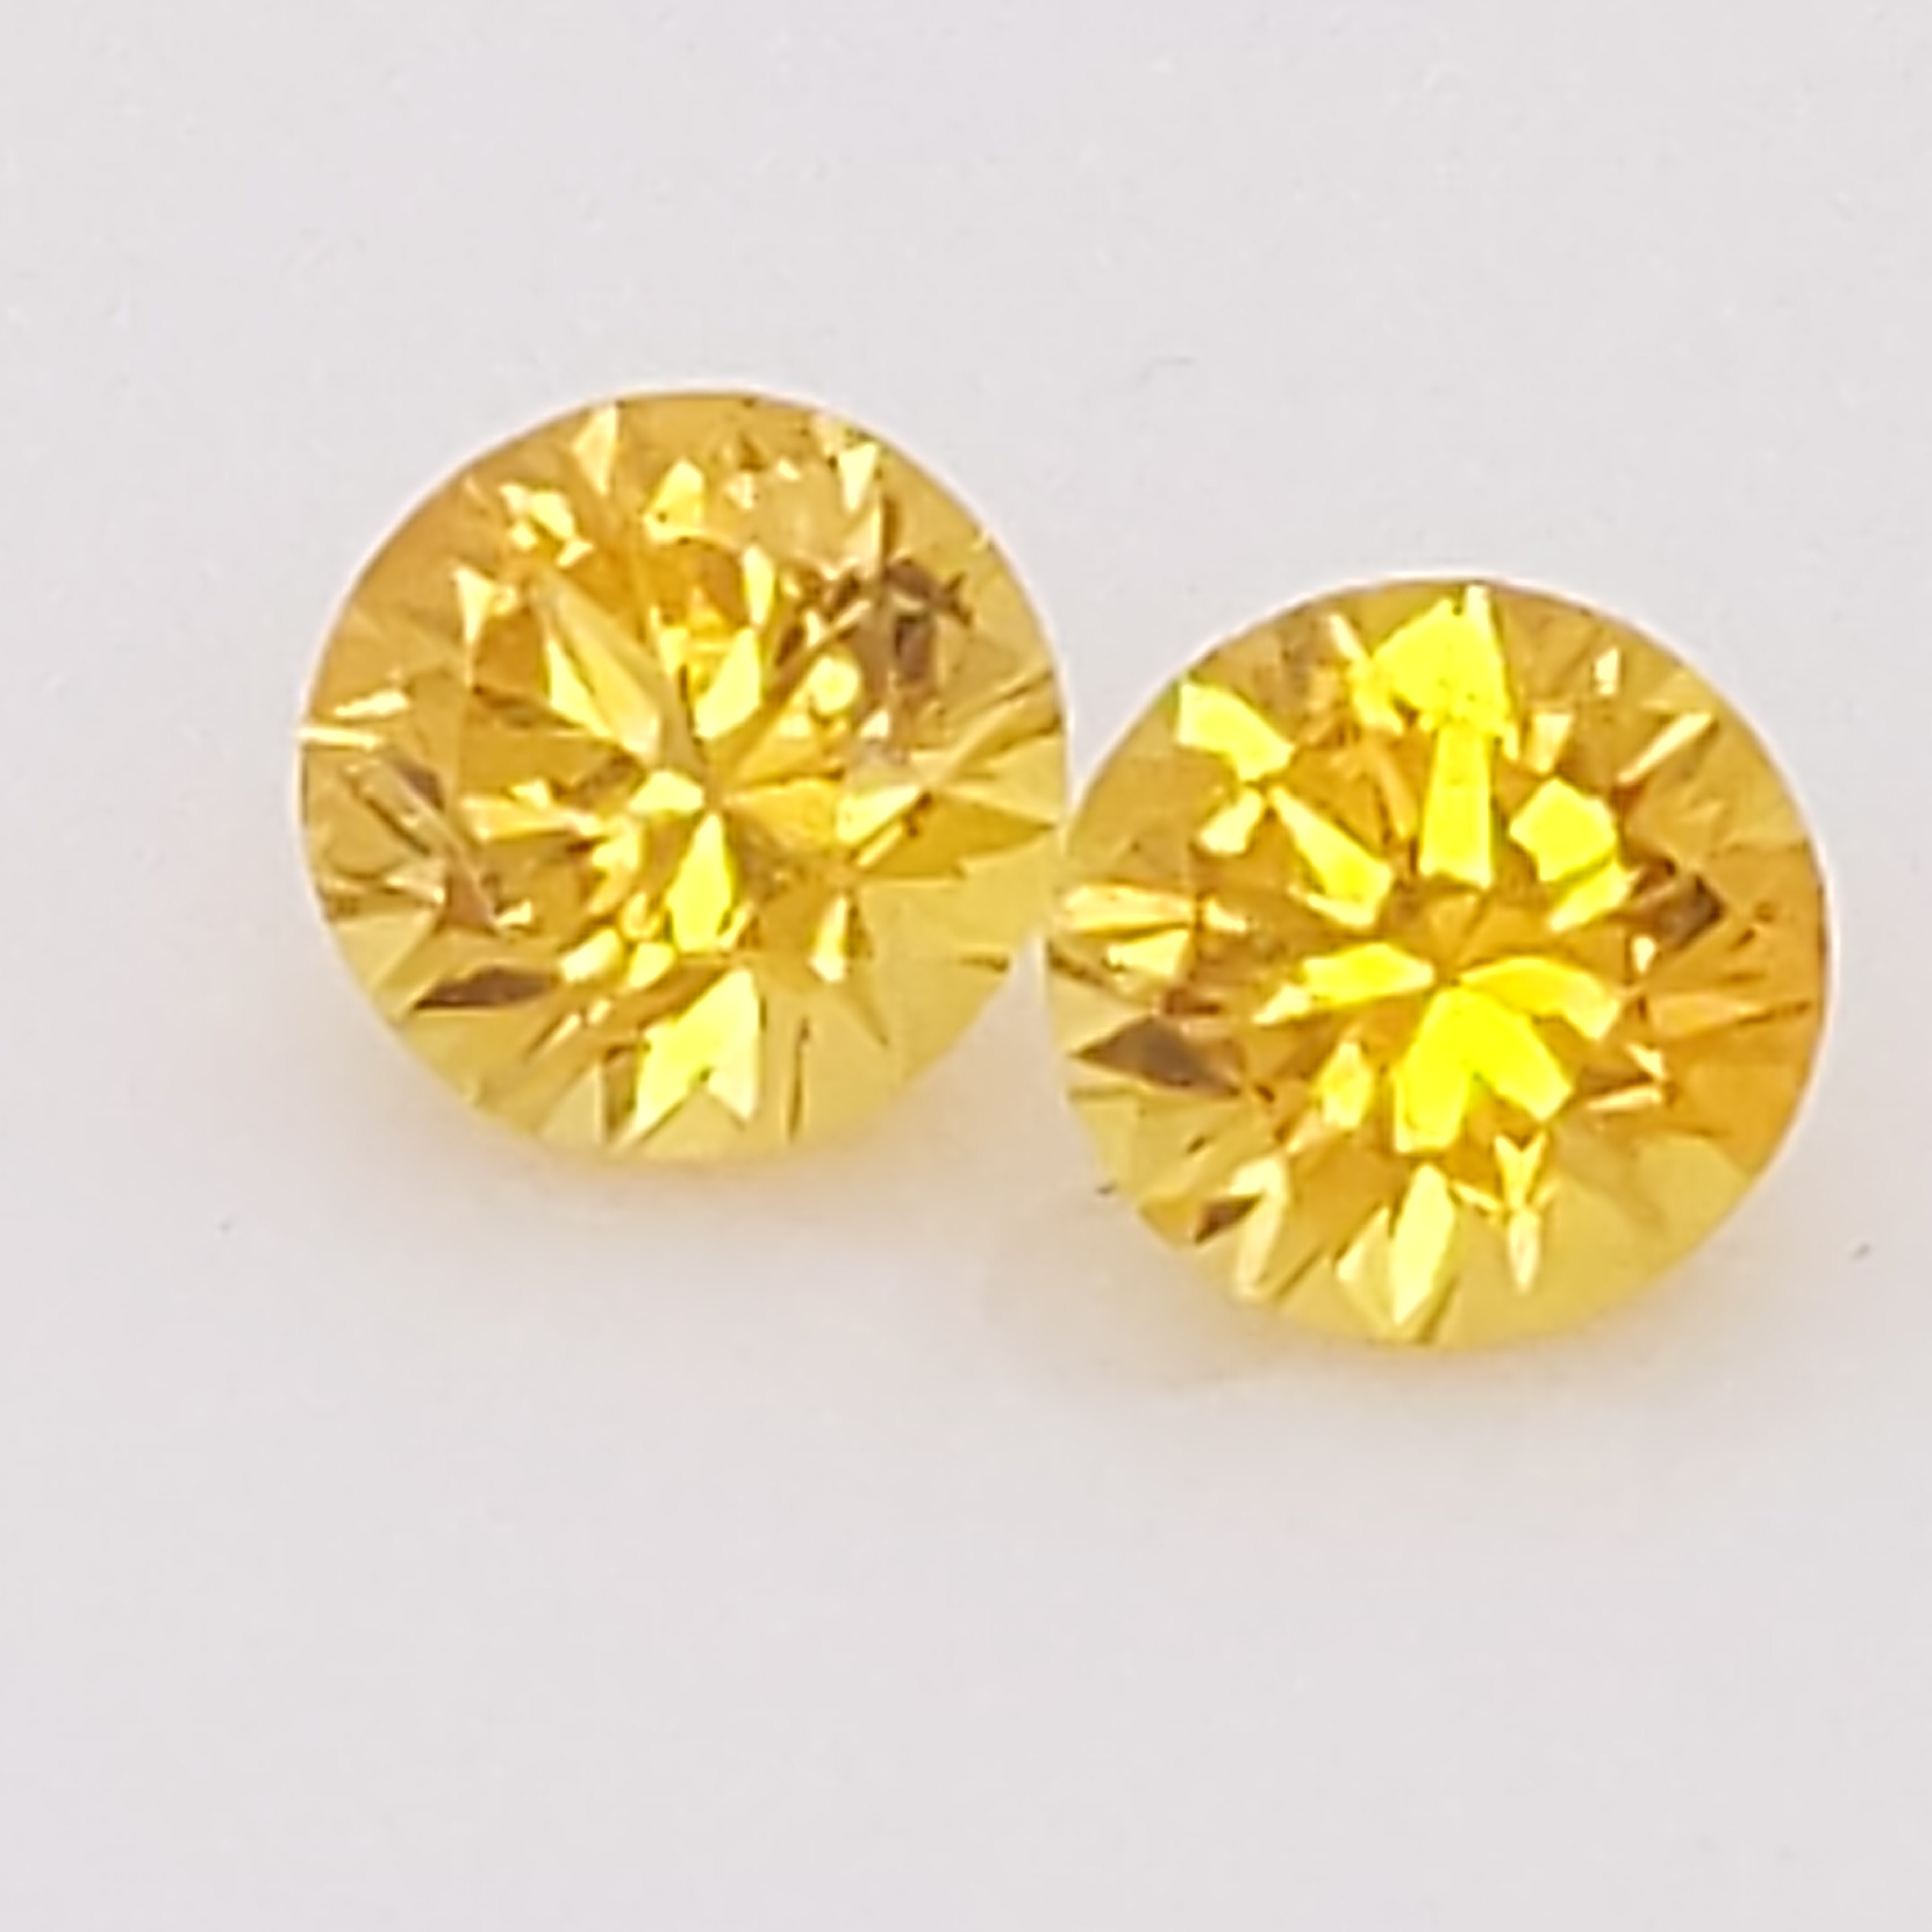 Jewellery Earrings Stud Earrings Untreated yellow sapphire studs. Yellow sapphire stud earrings 4mm Ceylon sapphire earrings 